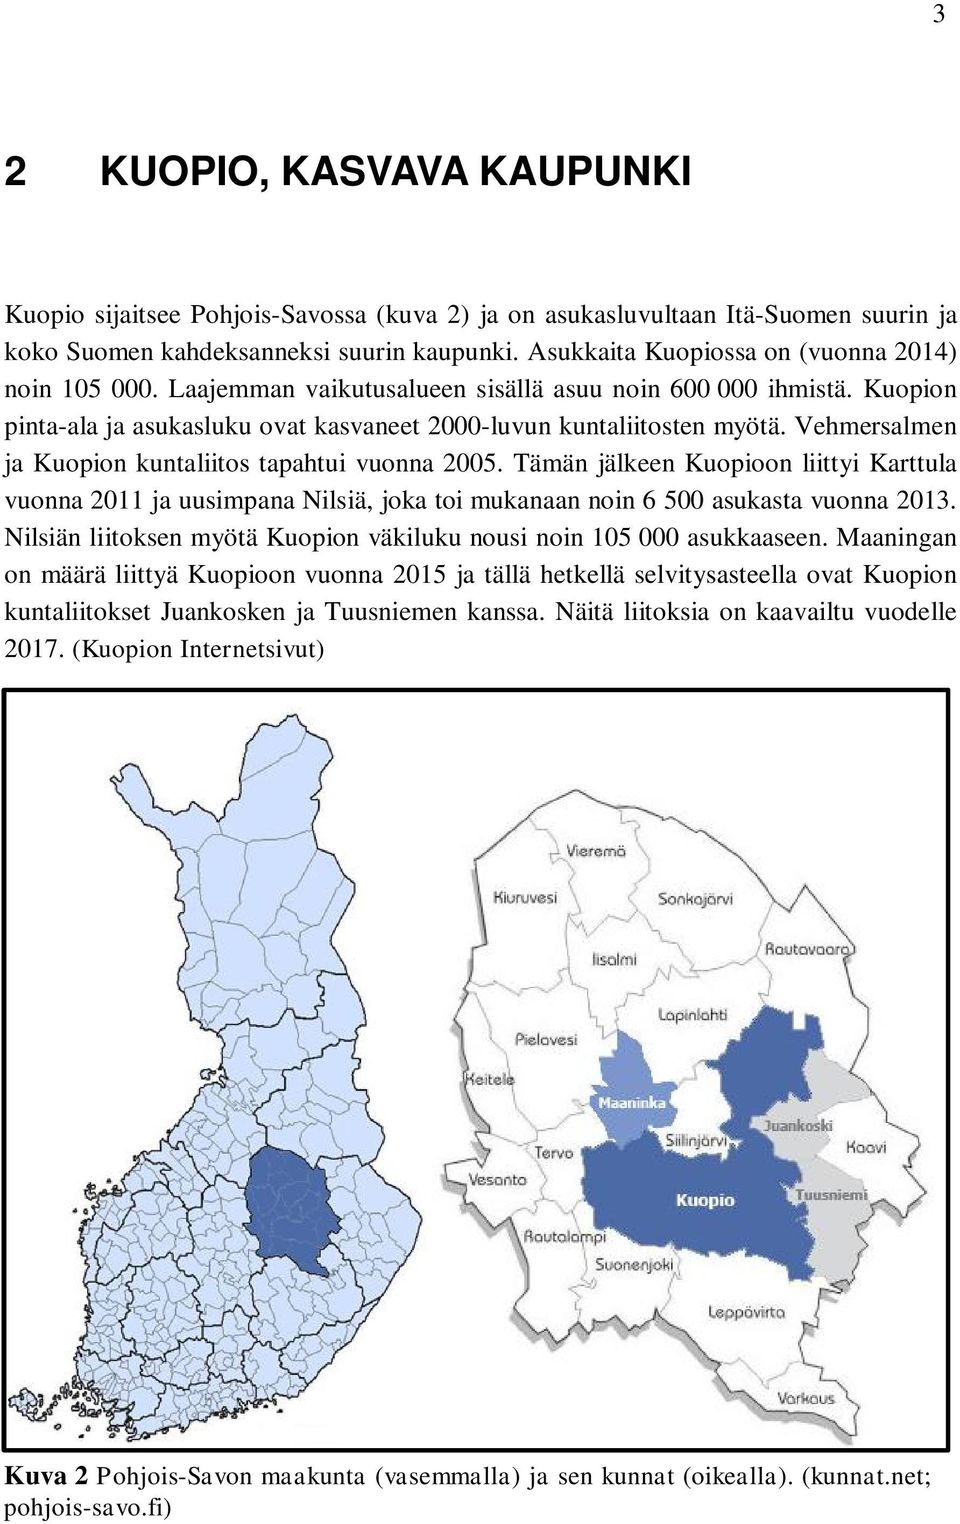 Vehmersalmen ja Kuopion kuntaliitos tapahtui vuonna 2005. Tämän jälkeen Kuopioon liittyi Karttula vuonna 2011 ja uusimpana Nilsiä, joka toi mukanaan noin 6 500 asukasta vuonna 2013.